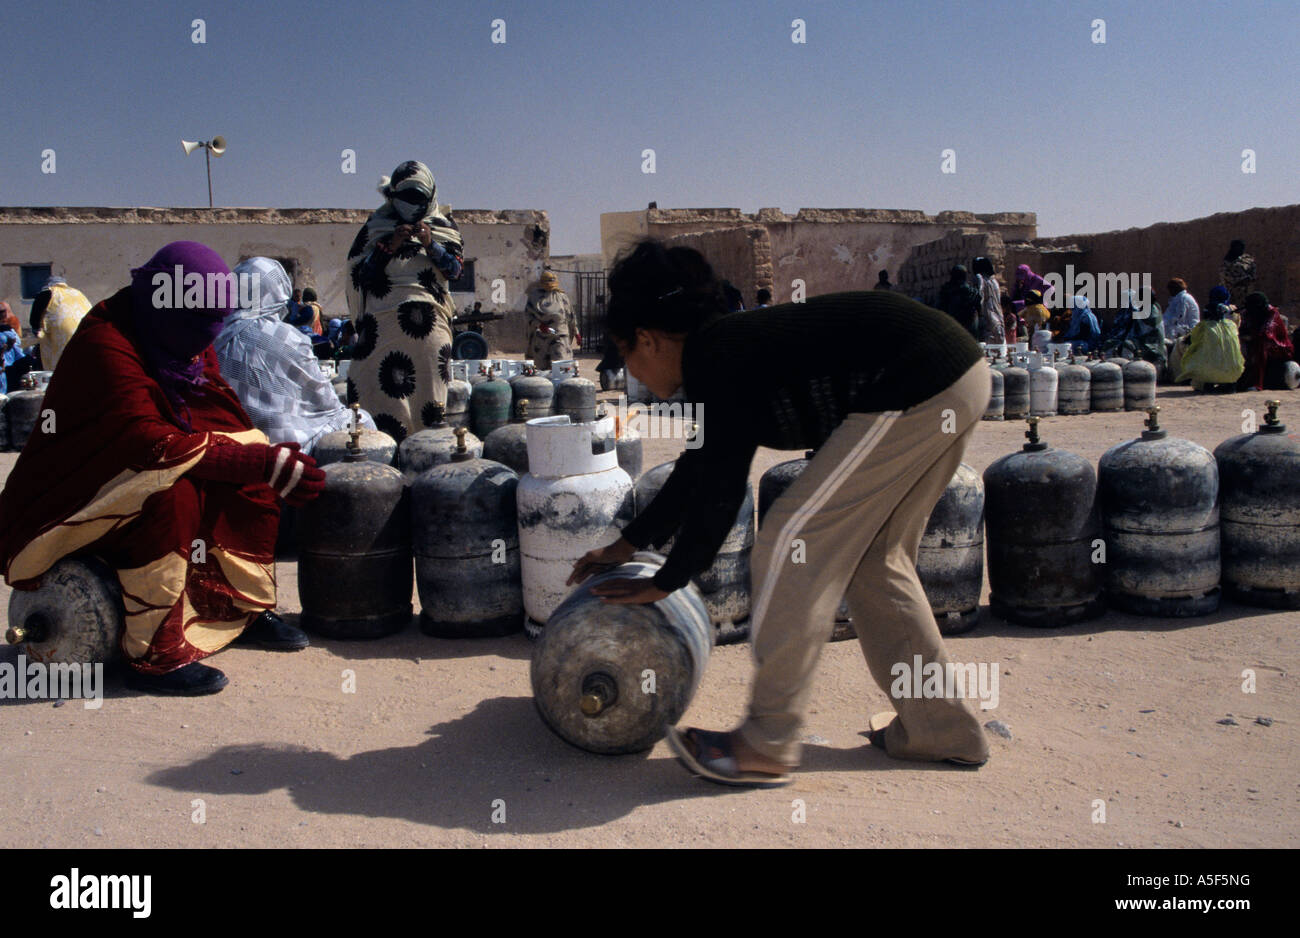 Garçon sahraoui aidant à déplacer la bouteille de gaz, Tindouf, dans l'ouest de l'Algérie Banque D'Images